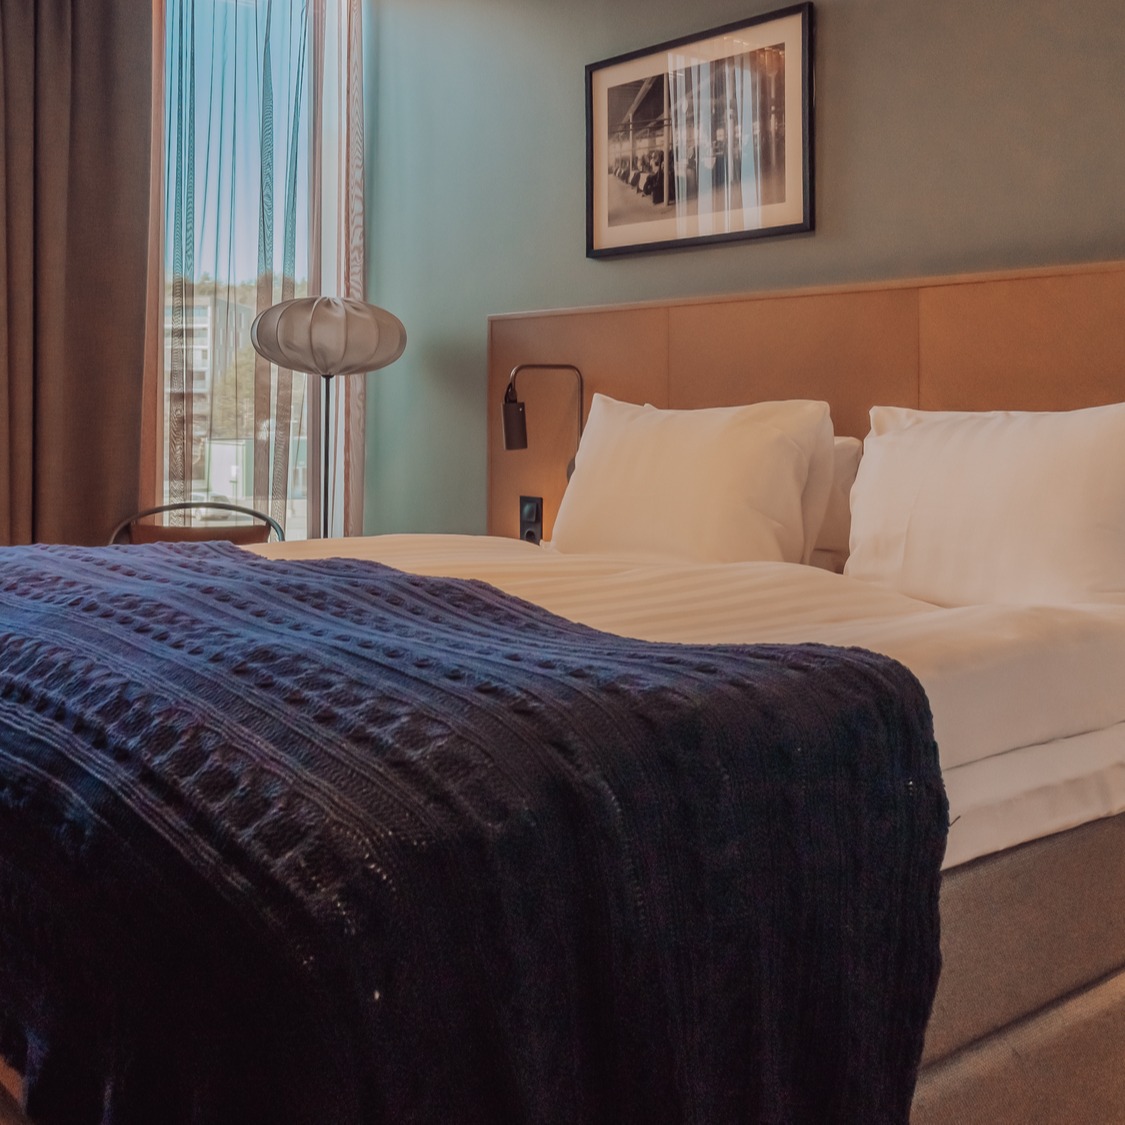 Standard sovrum på Quality Hotel™ The Weaver i Göteborg.